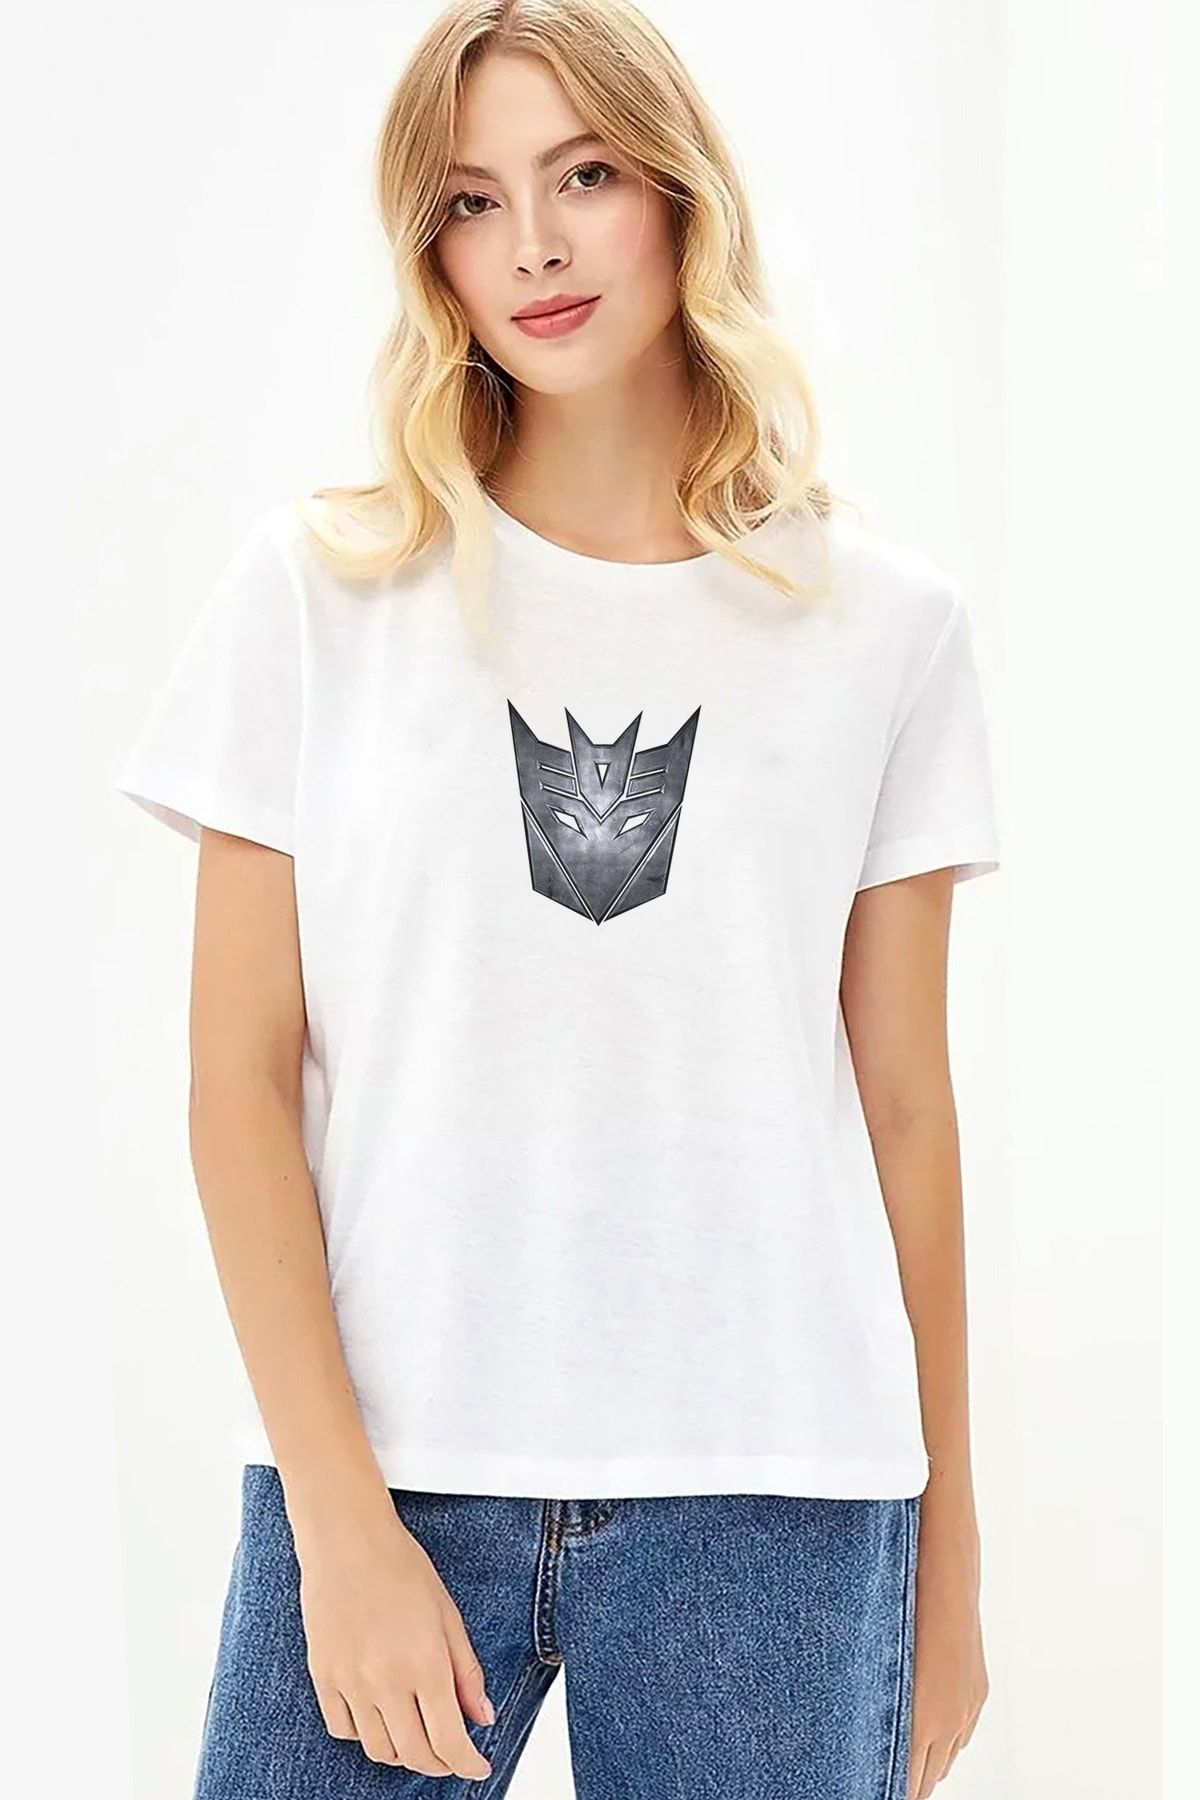 QIVI Transformers Baskılı Beyaz Kadın Örme Tshirt T-shirt Tişört T Shirt